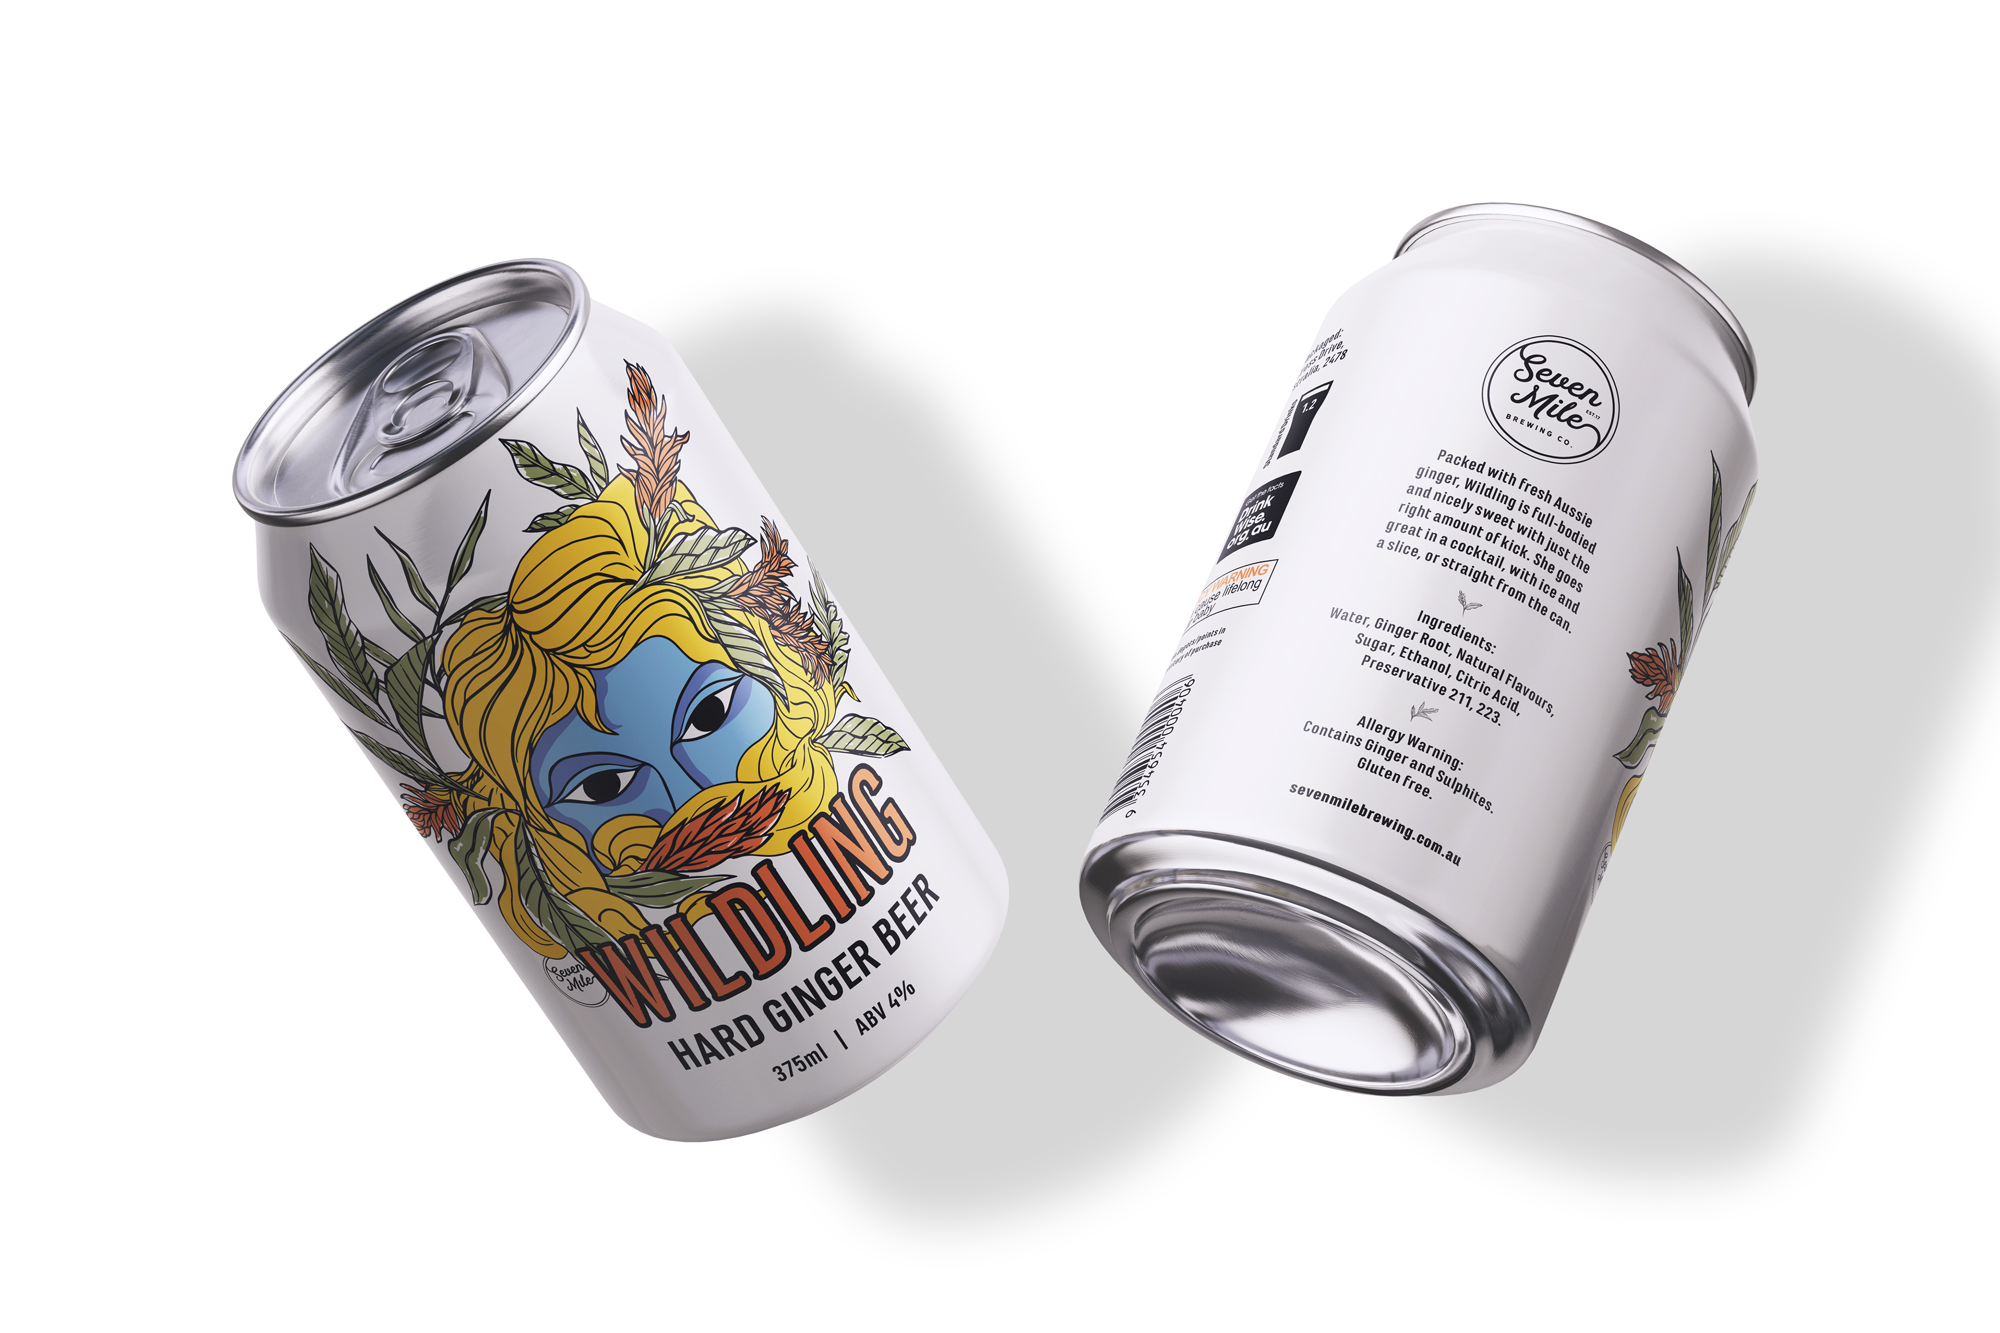 Wildling Ginger Beer Packaging Design Media Mock-Up